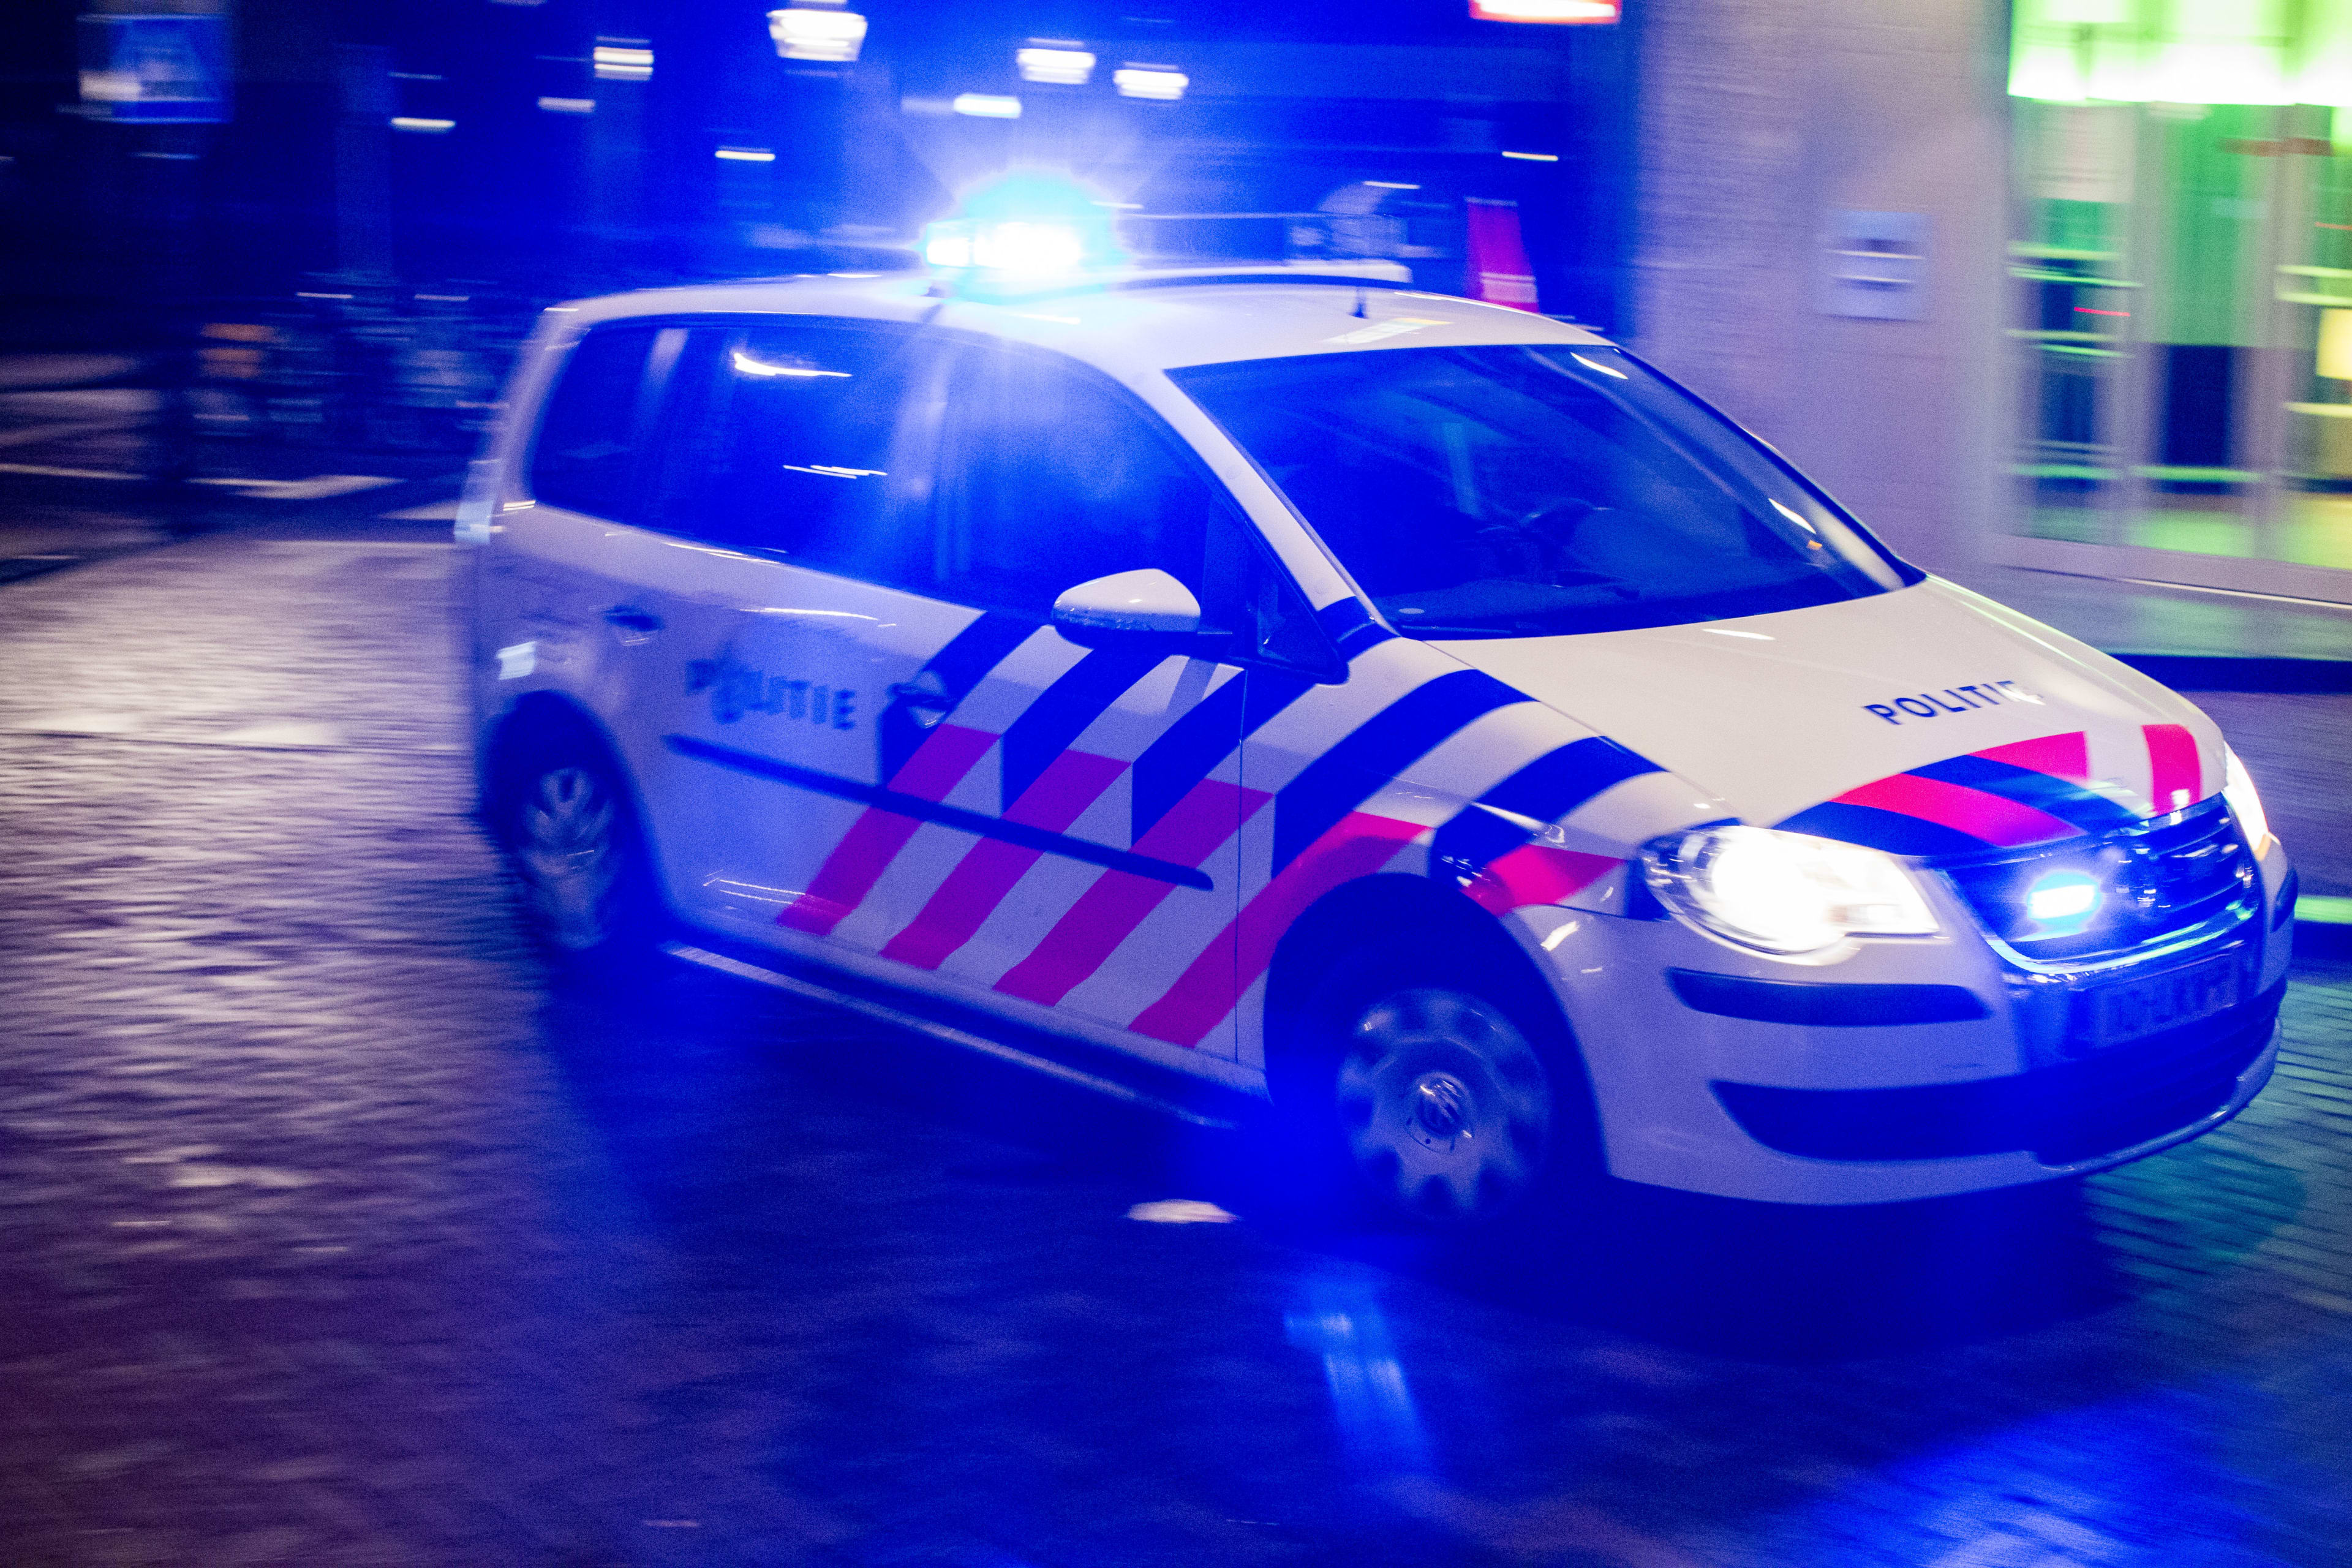 Al dagen onrustig in Utrechtse wijk Overvecht: politie bekogeld met vuurwerk en eieren